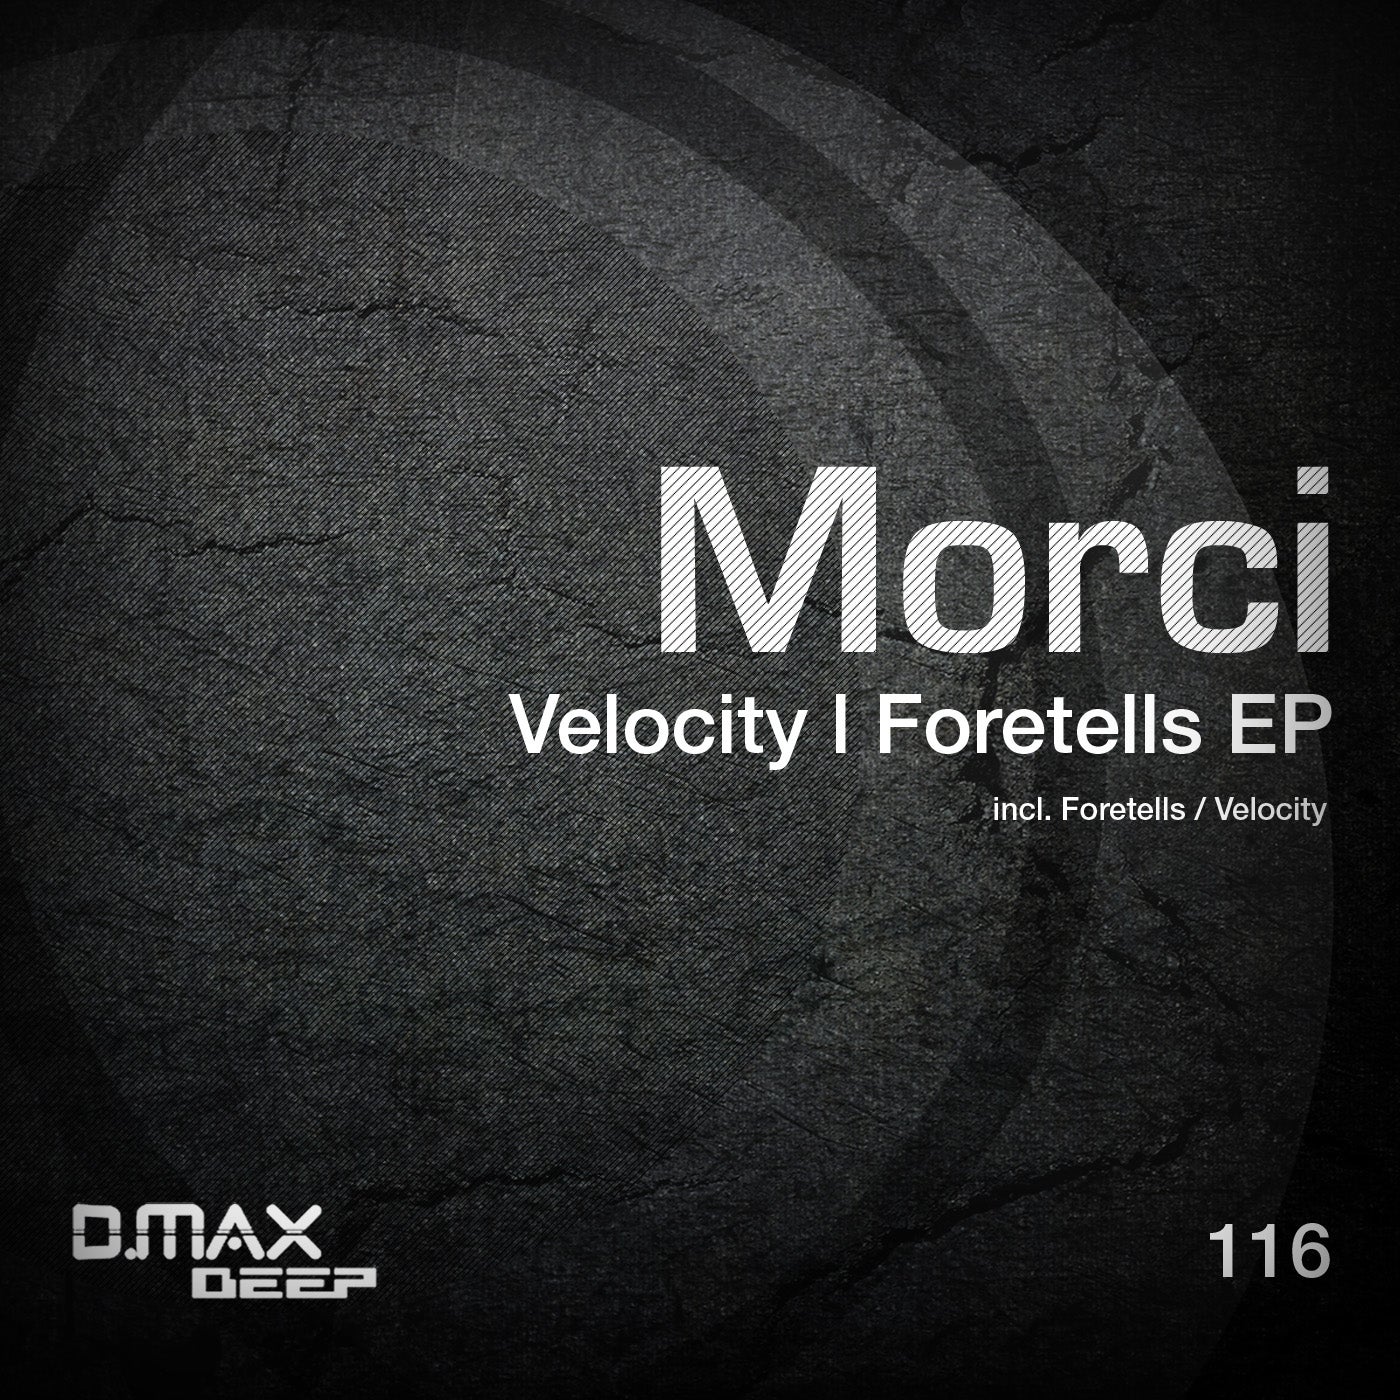 Velocity / Foretells EP